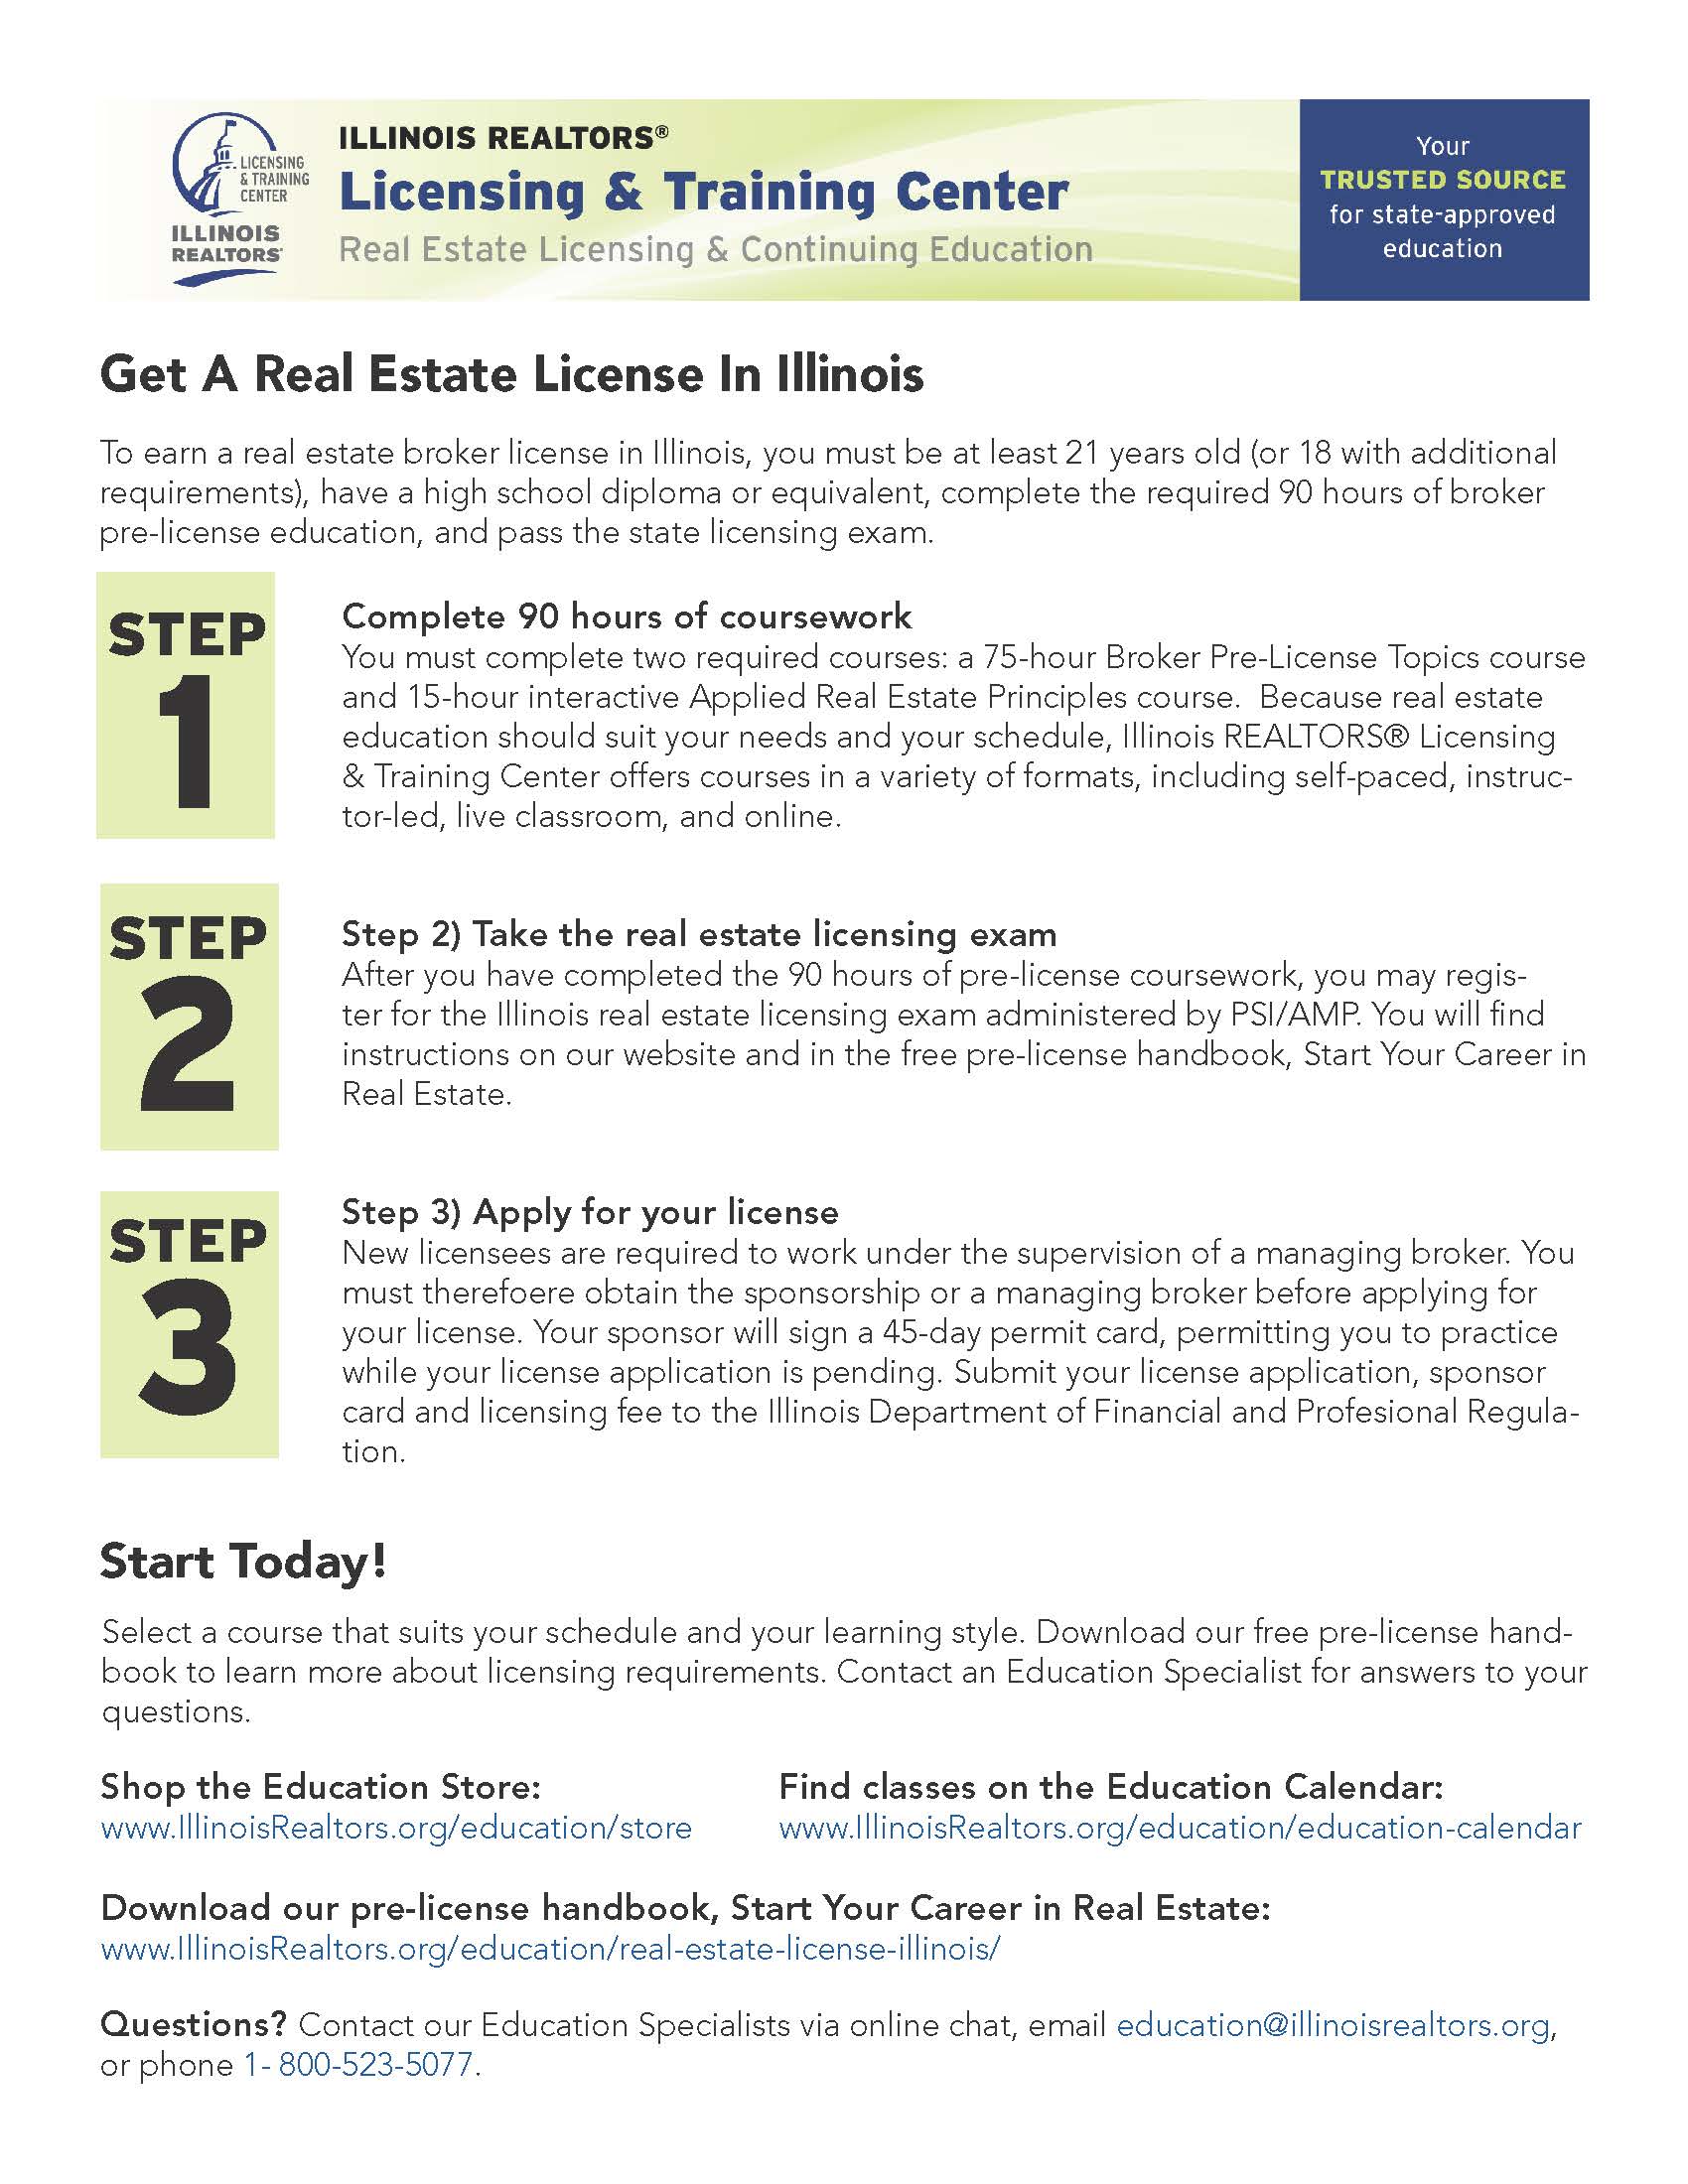 Get A Real Estate License In Illinois - Illinois REALTORS